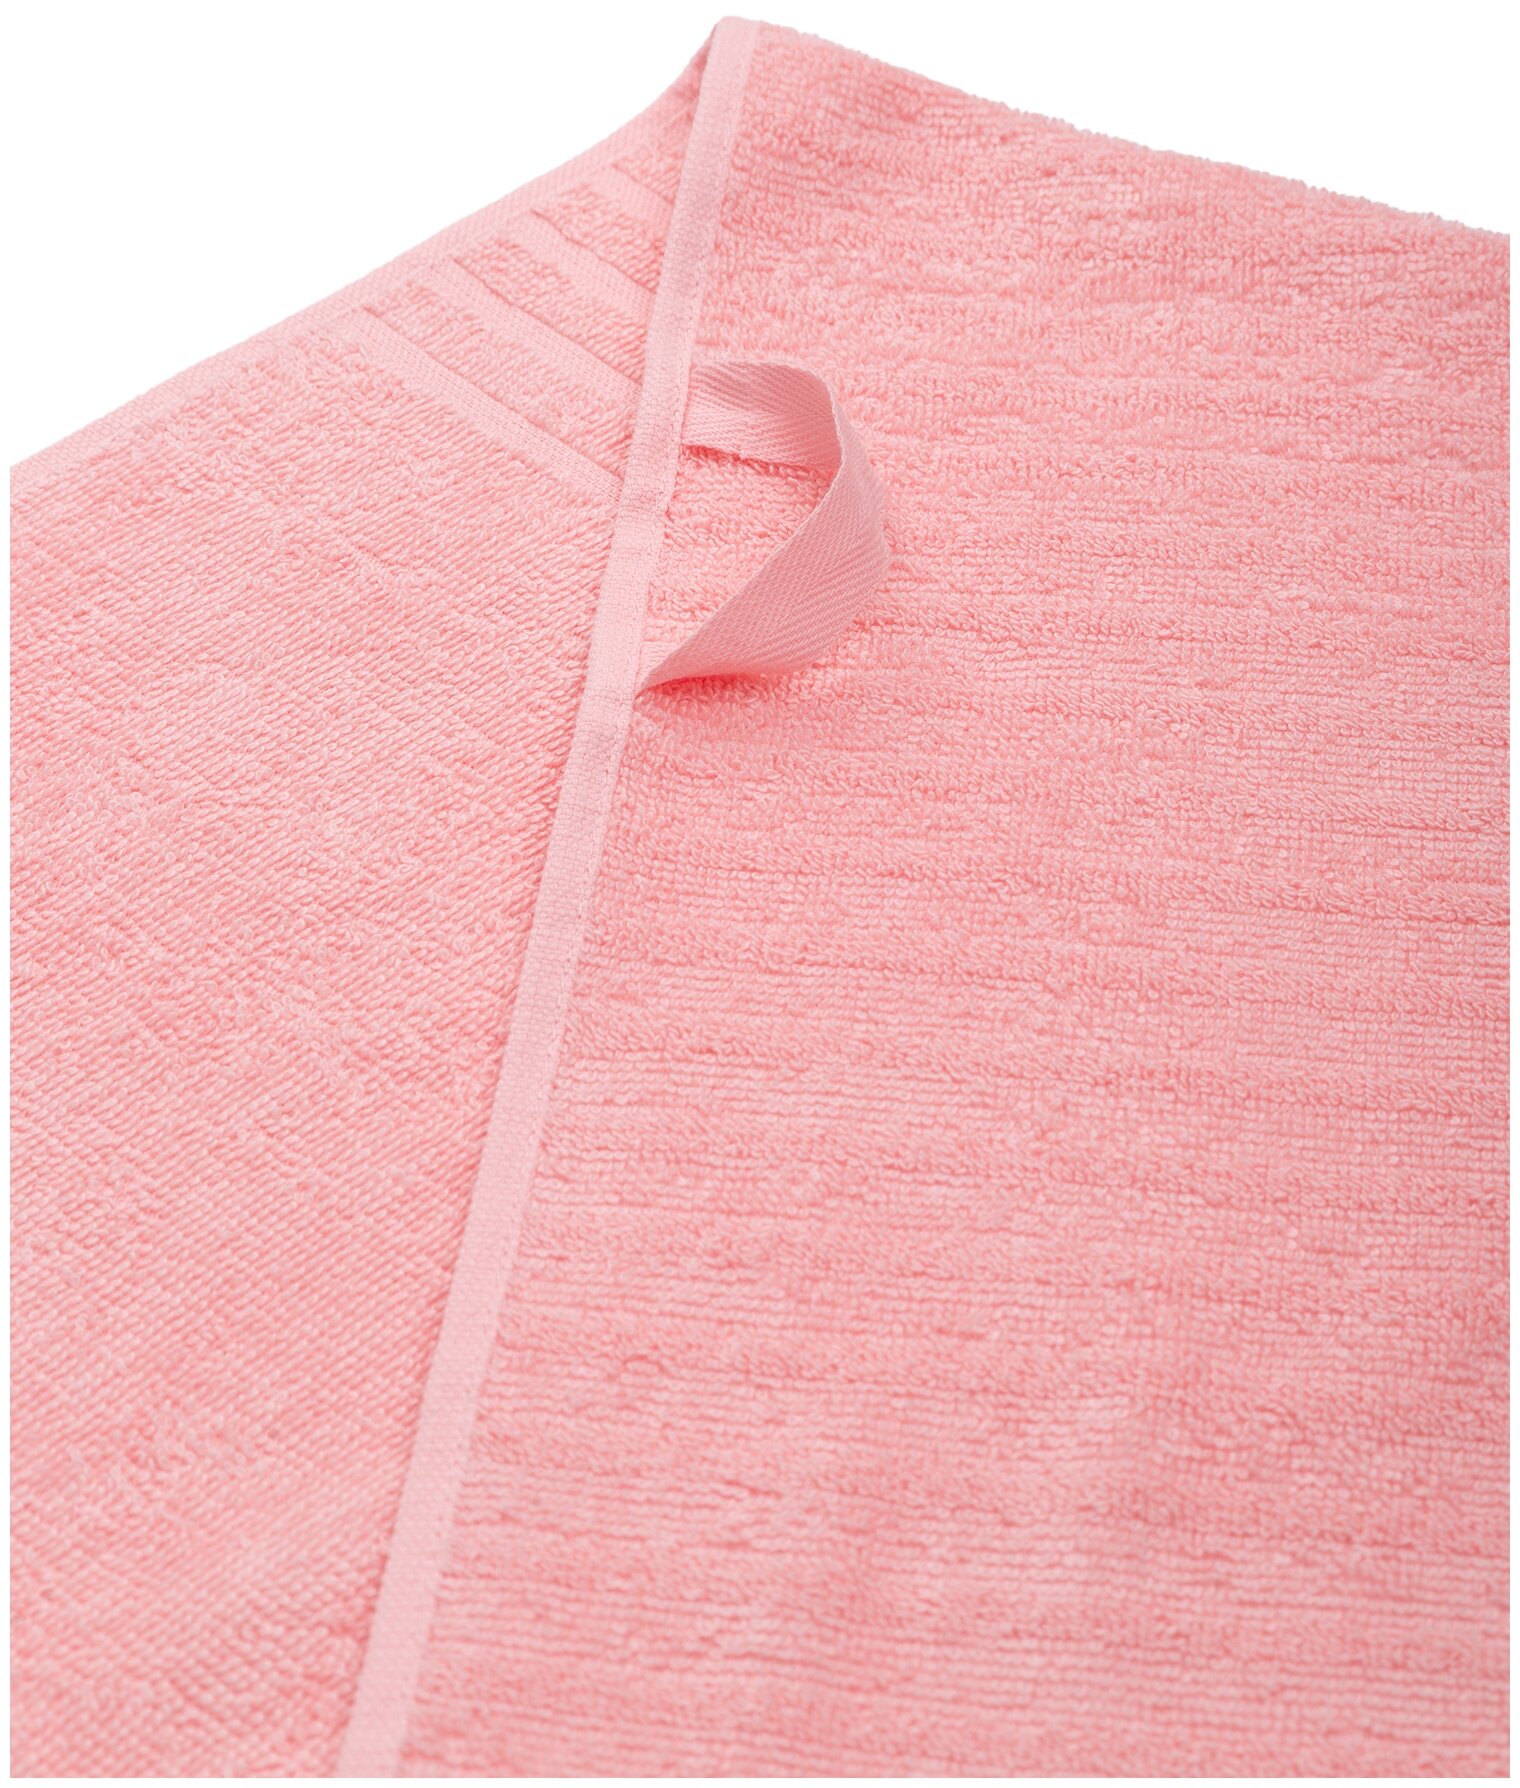 Полотенце махровое для лица и рук, Донецкая мануфактура, 50Х100см, цвет:розовый кварц, 100% хлопок - фотография № 3